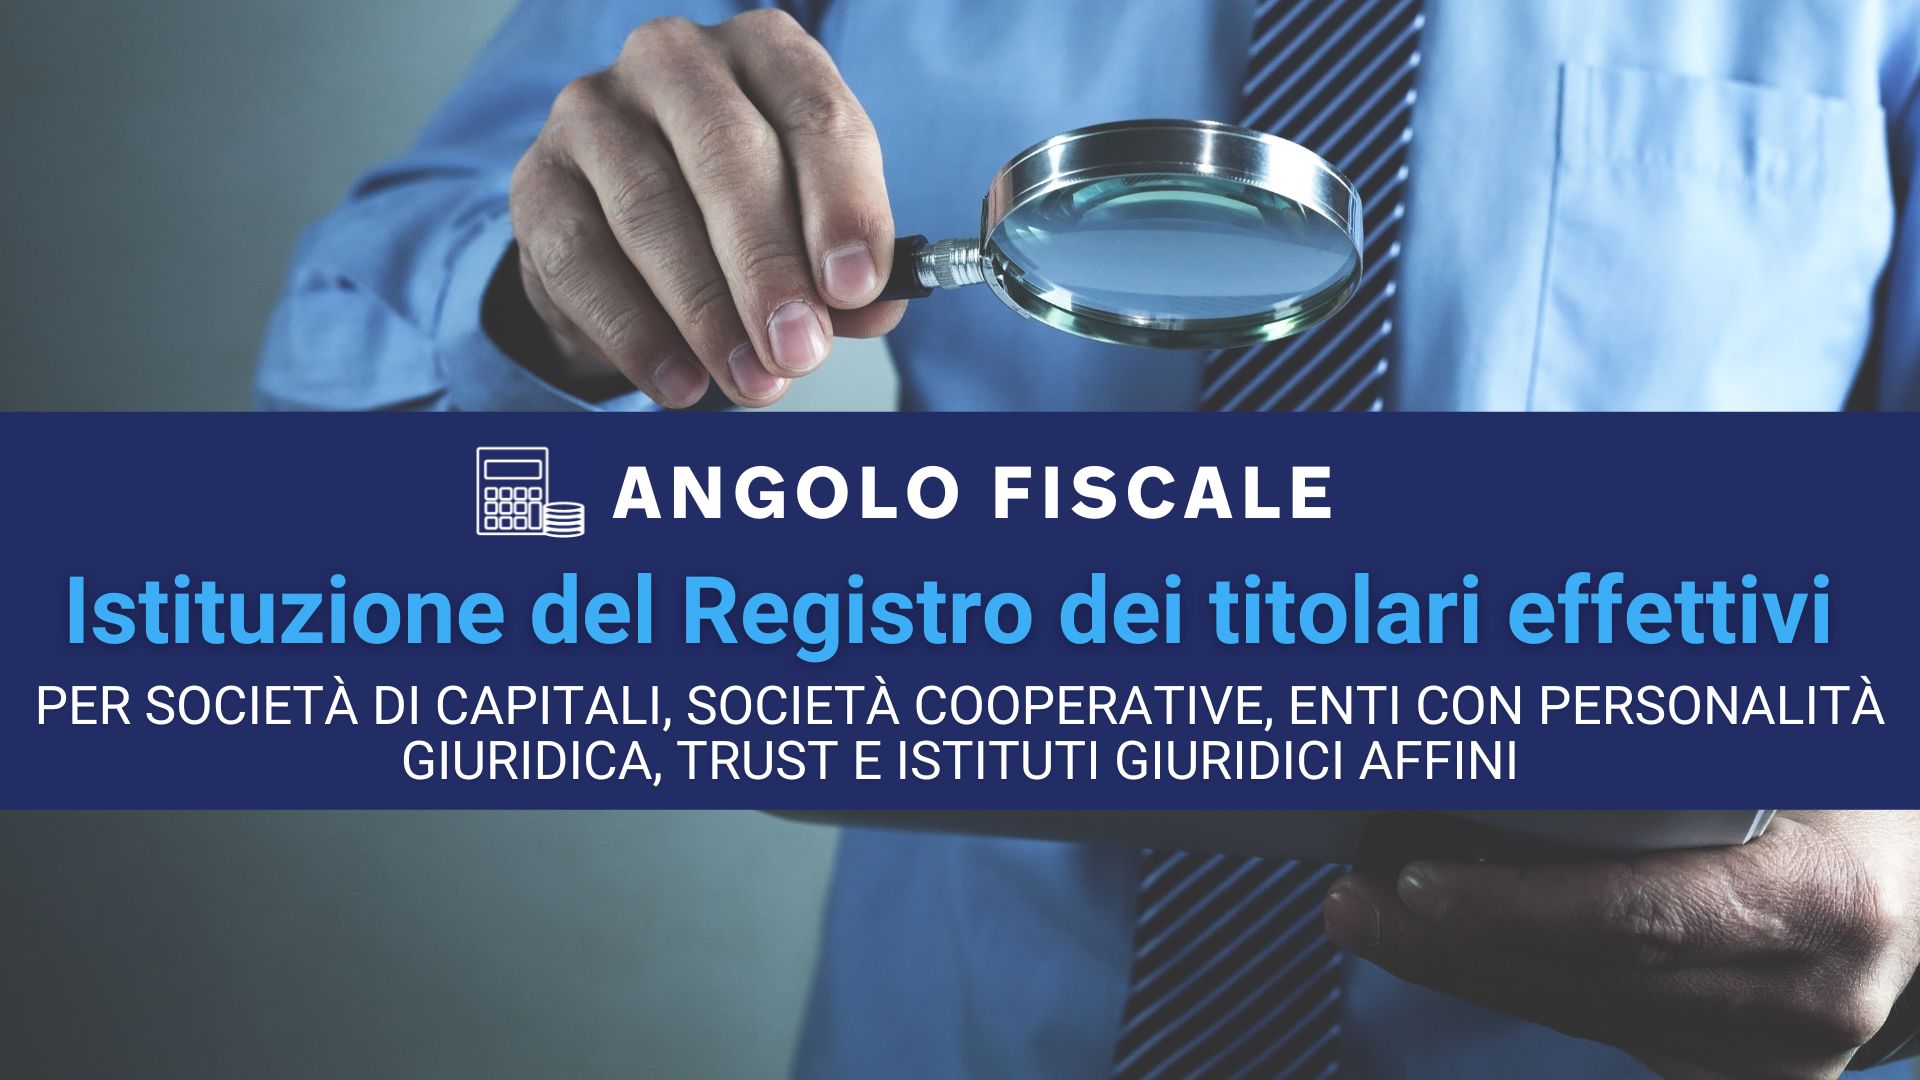 ANGOLO FISCALE Istituzione del Registro dei titolari effettivi per societa di capitali societa cooperative enti con personalita giuridica trust e istituti giuridici affini